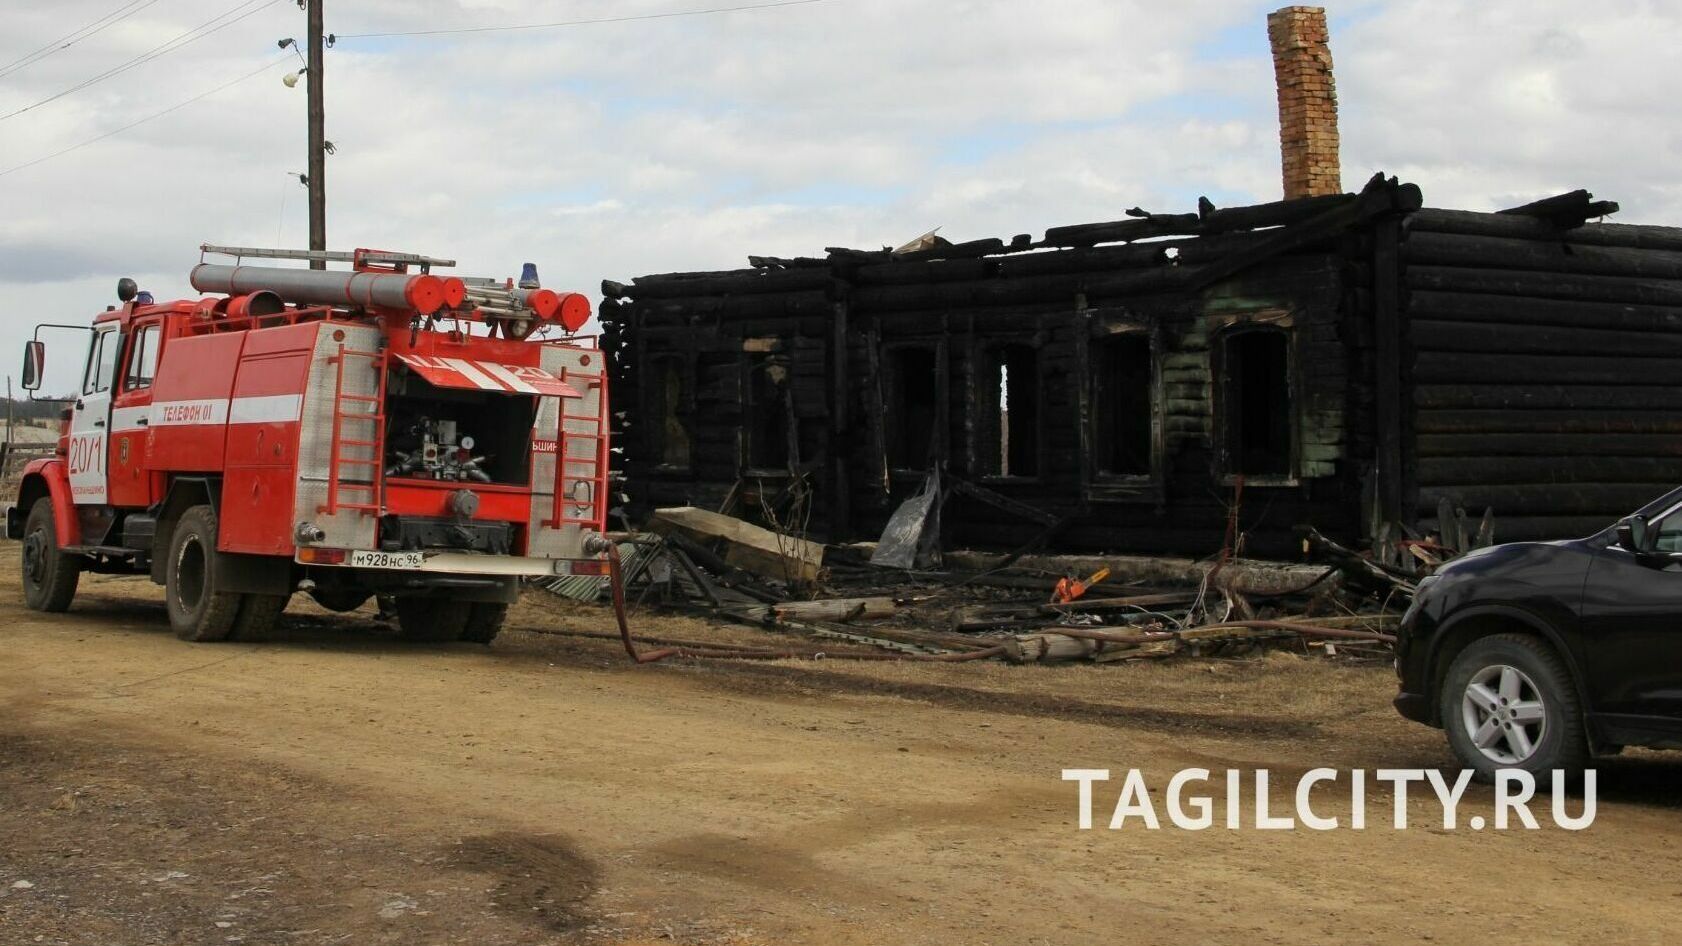 Жителю Тагила выплатили страховку за сгоревший дом, а на НТМК нагрянула проверка